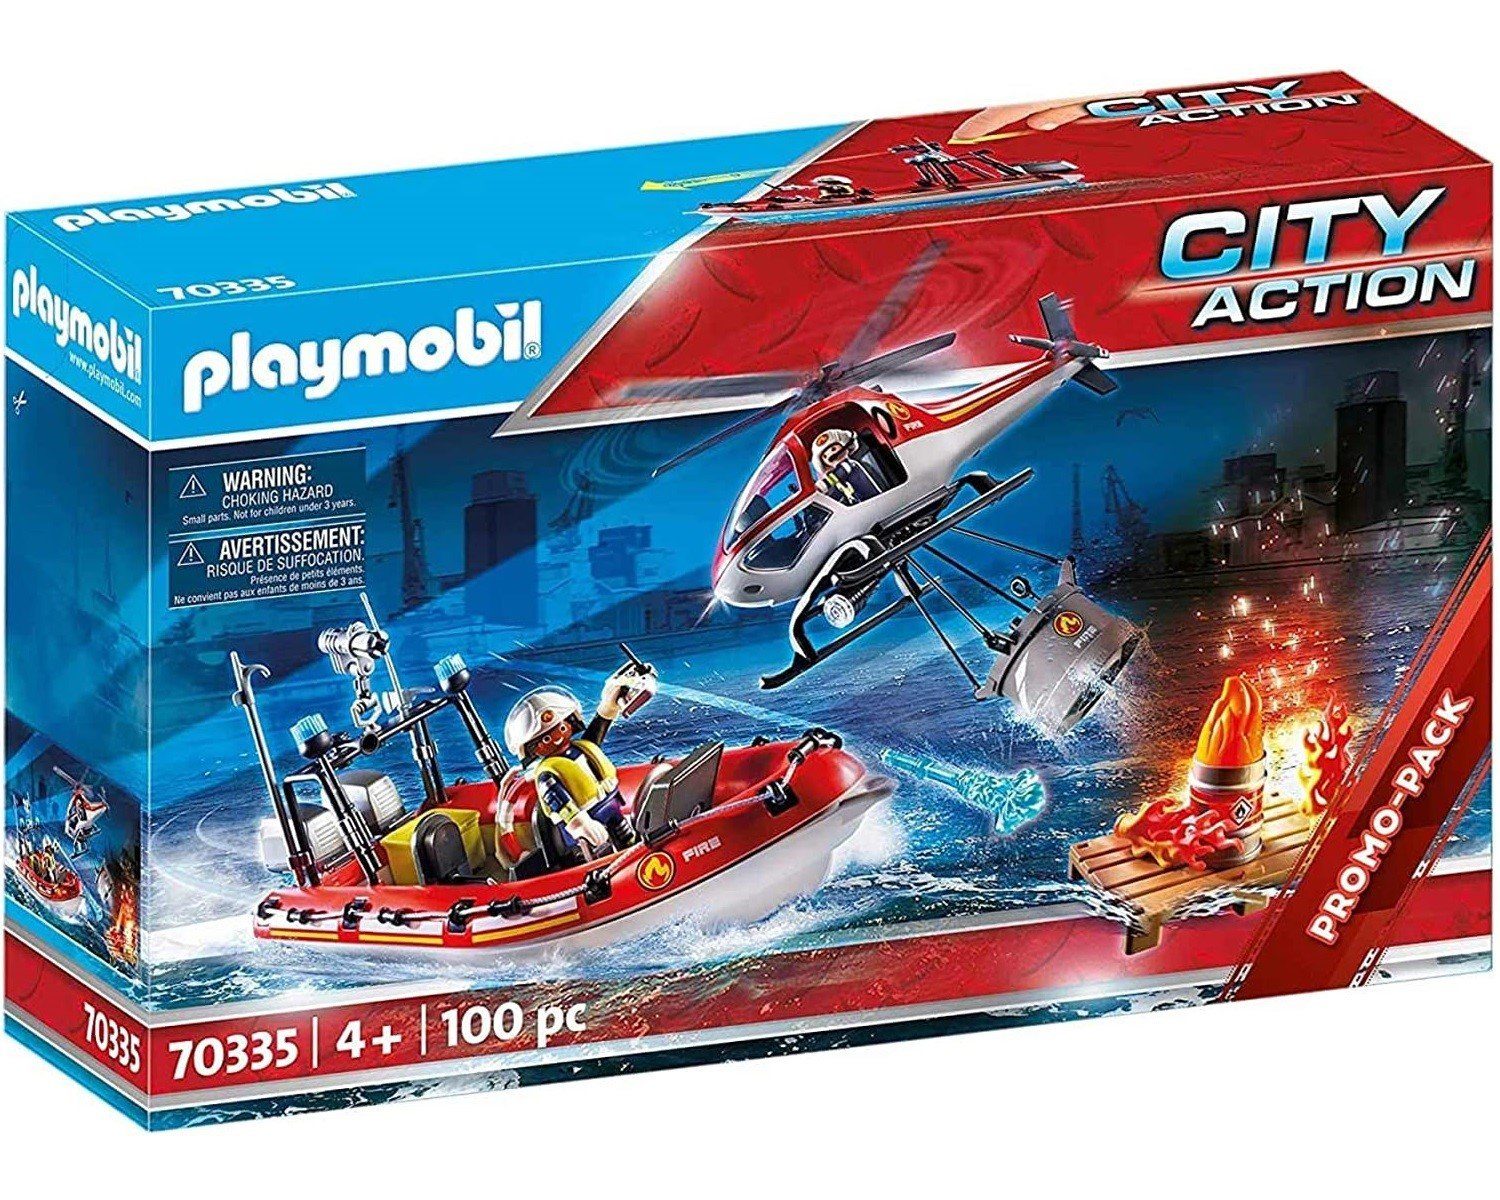 Playmobil® Spielwelt City Action Feuerwehr-Einsatz mit Heli + Boot, 70335  Hubschrauber Rettung Feuerwehr-Boot Spielzeug-Figuren Lösch-Aktion